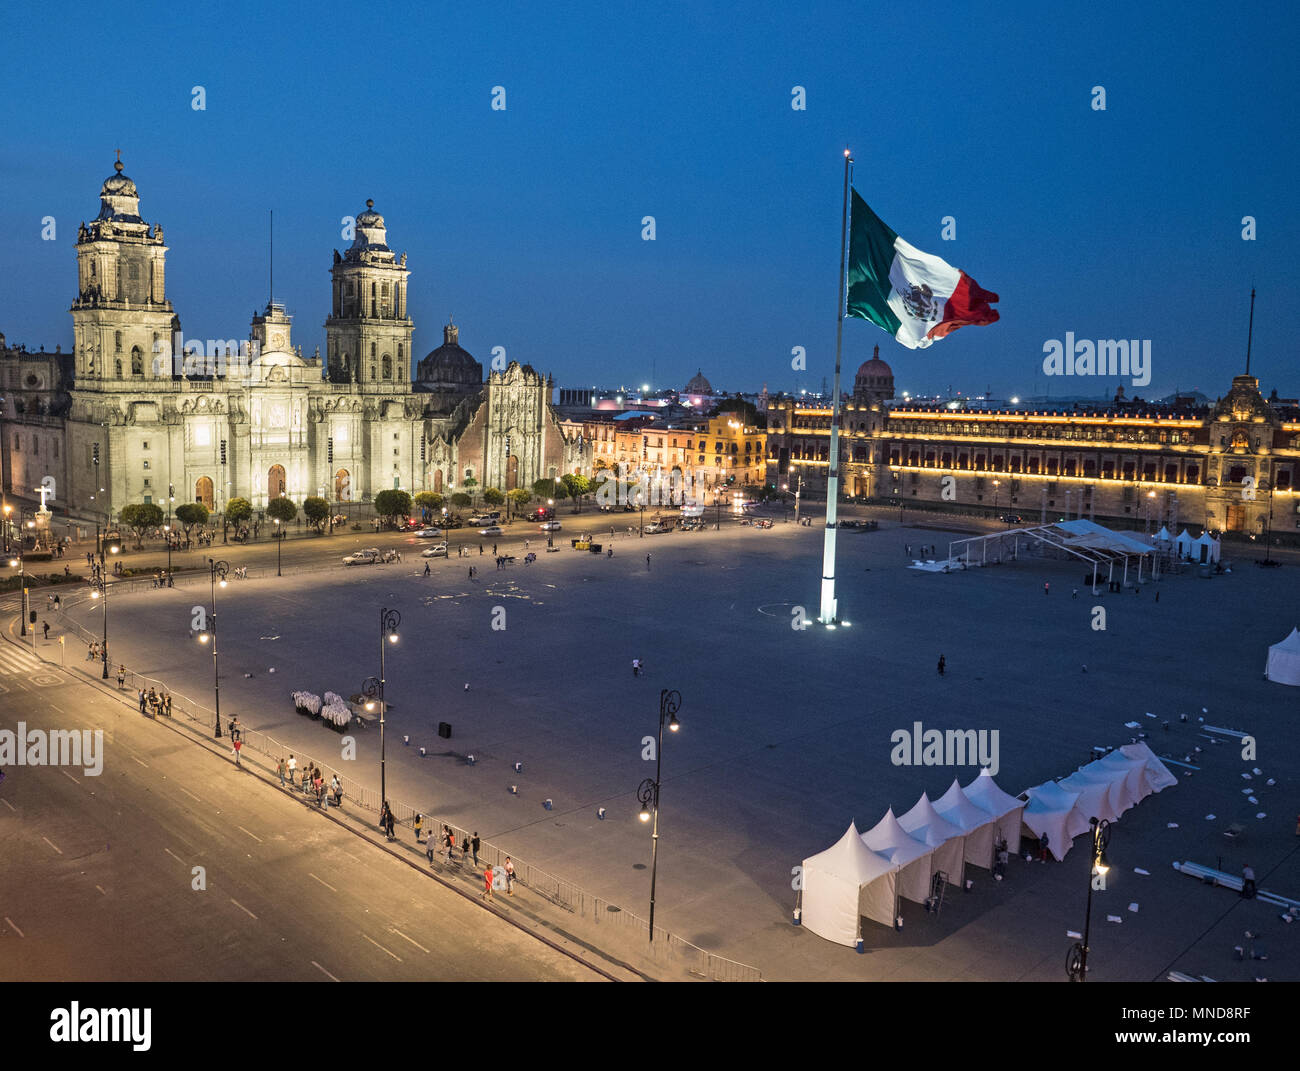 Ansicht des Mexico City Plaza der Verfassung Zócalo bei Nacht von oben mit der Mexikanischen Flagge, der Kathedrale und dem Presidential Palace Stockfoto